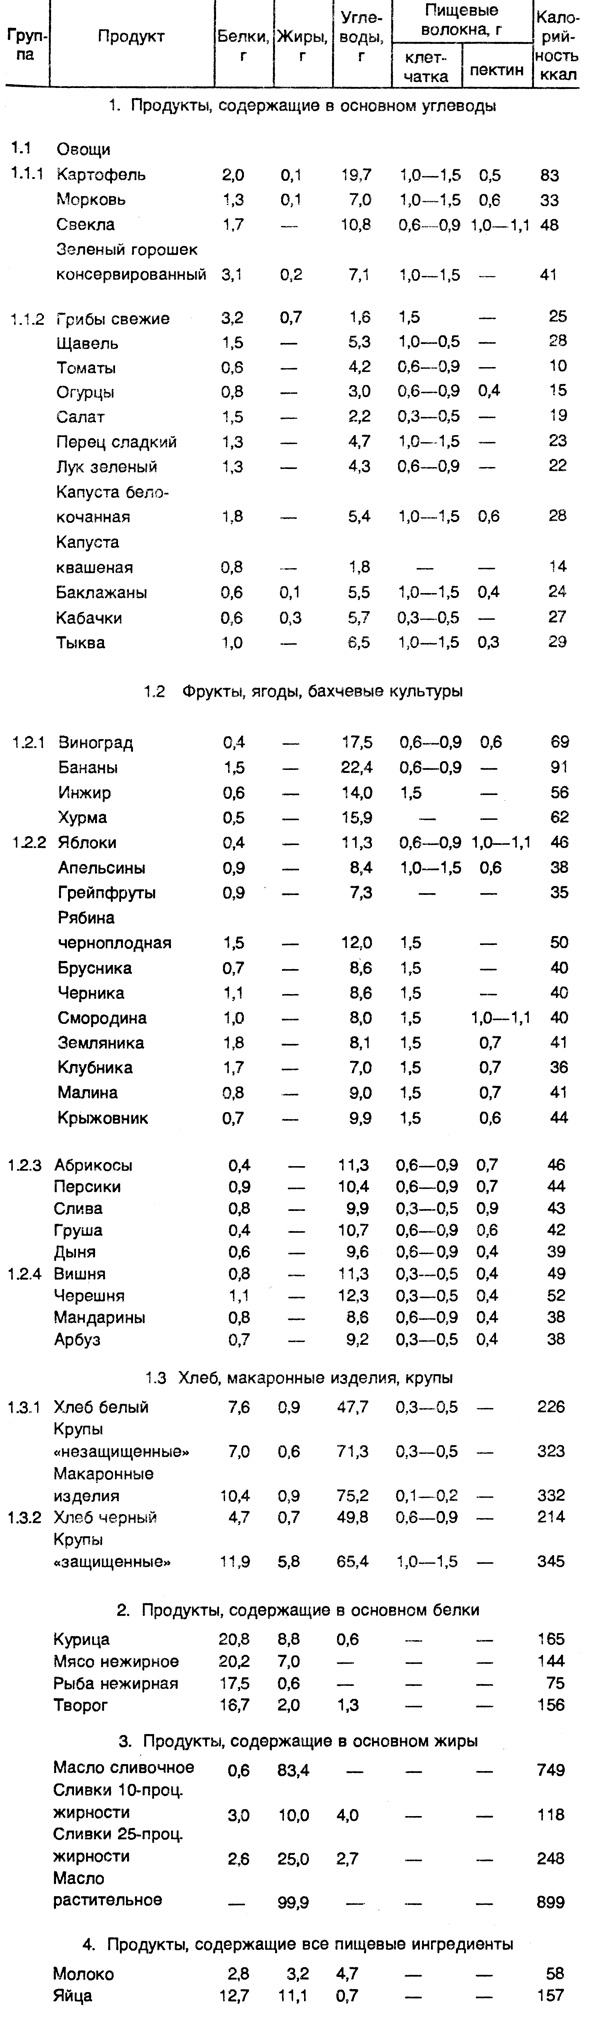 Таблица 6. Состав и калорийность основных продуктов питания в пересчете на 100 г съедобной части